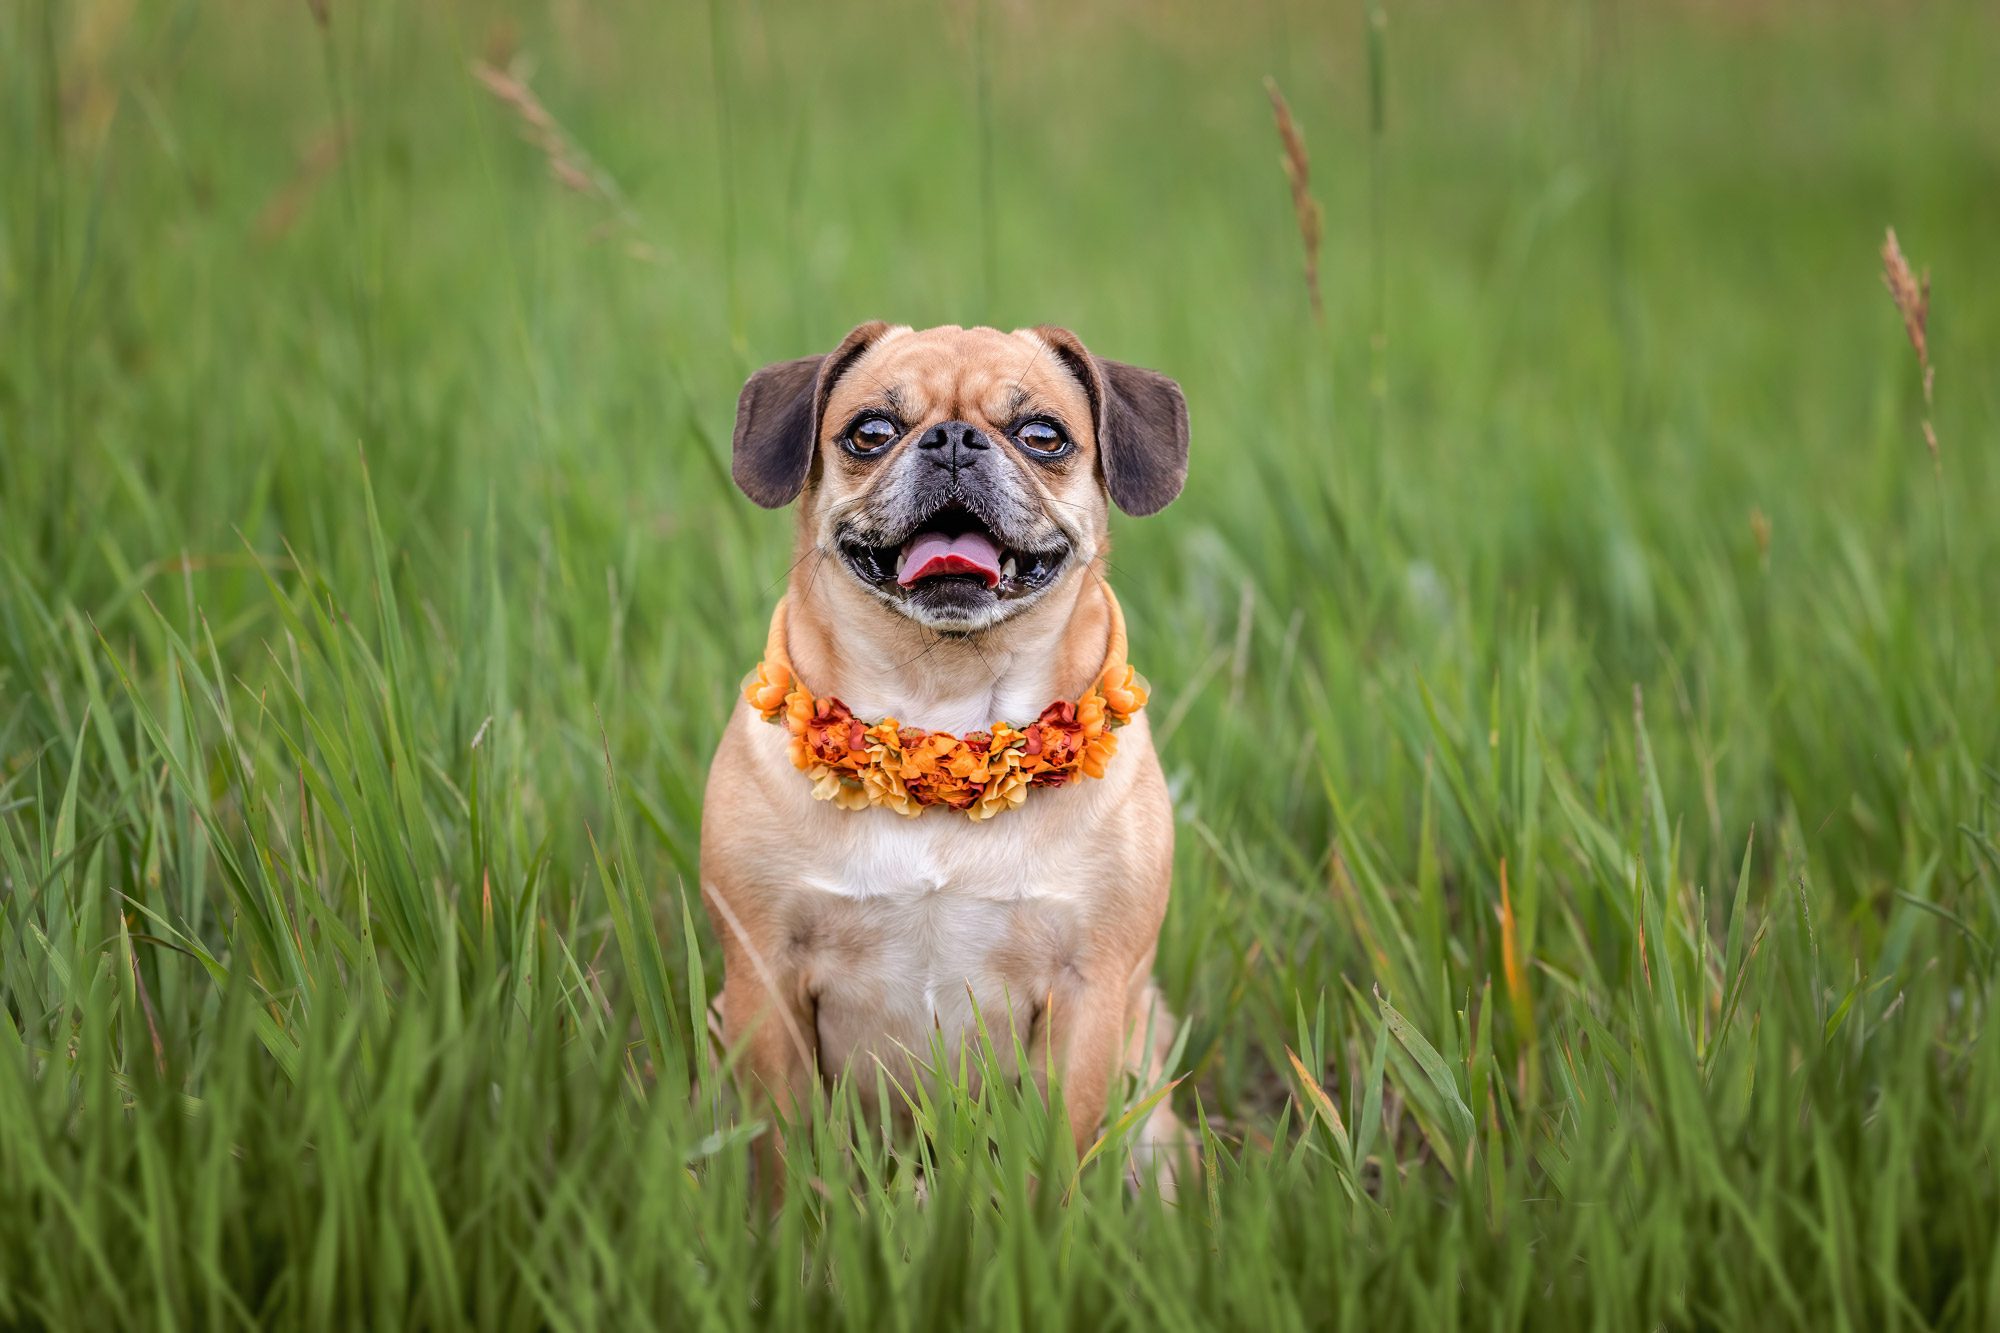 Pug dog in green grass